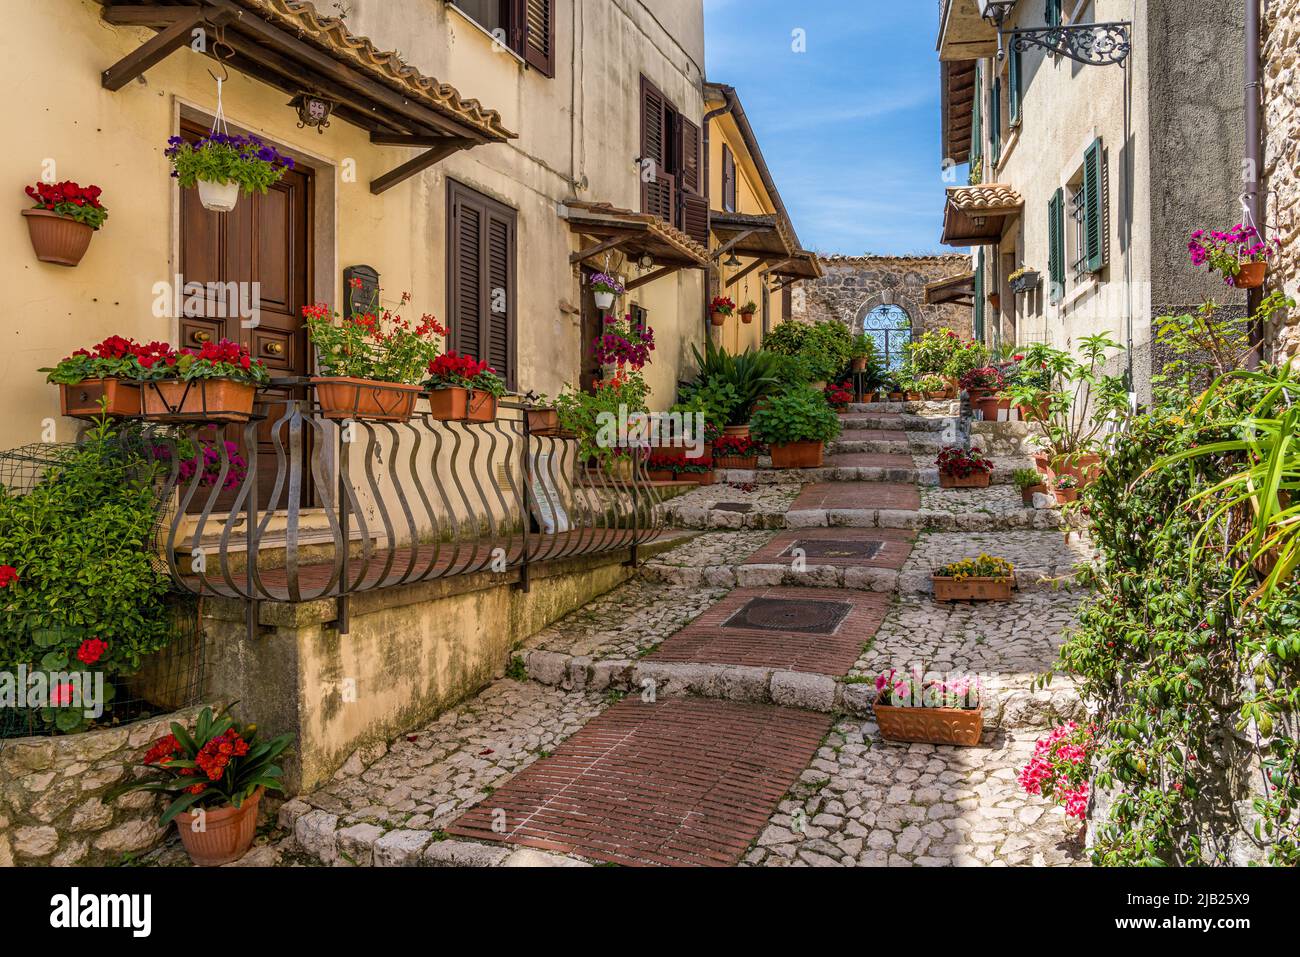 The beautiful village of Veroli, near Frosinone, Lazio, central Italy. Stock Photo